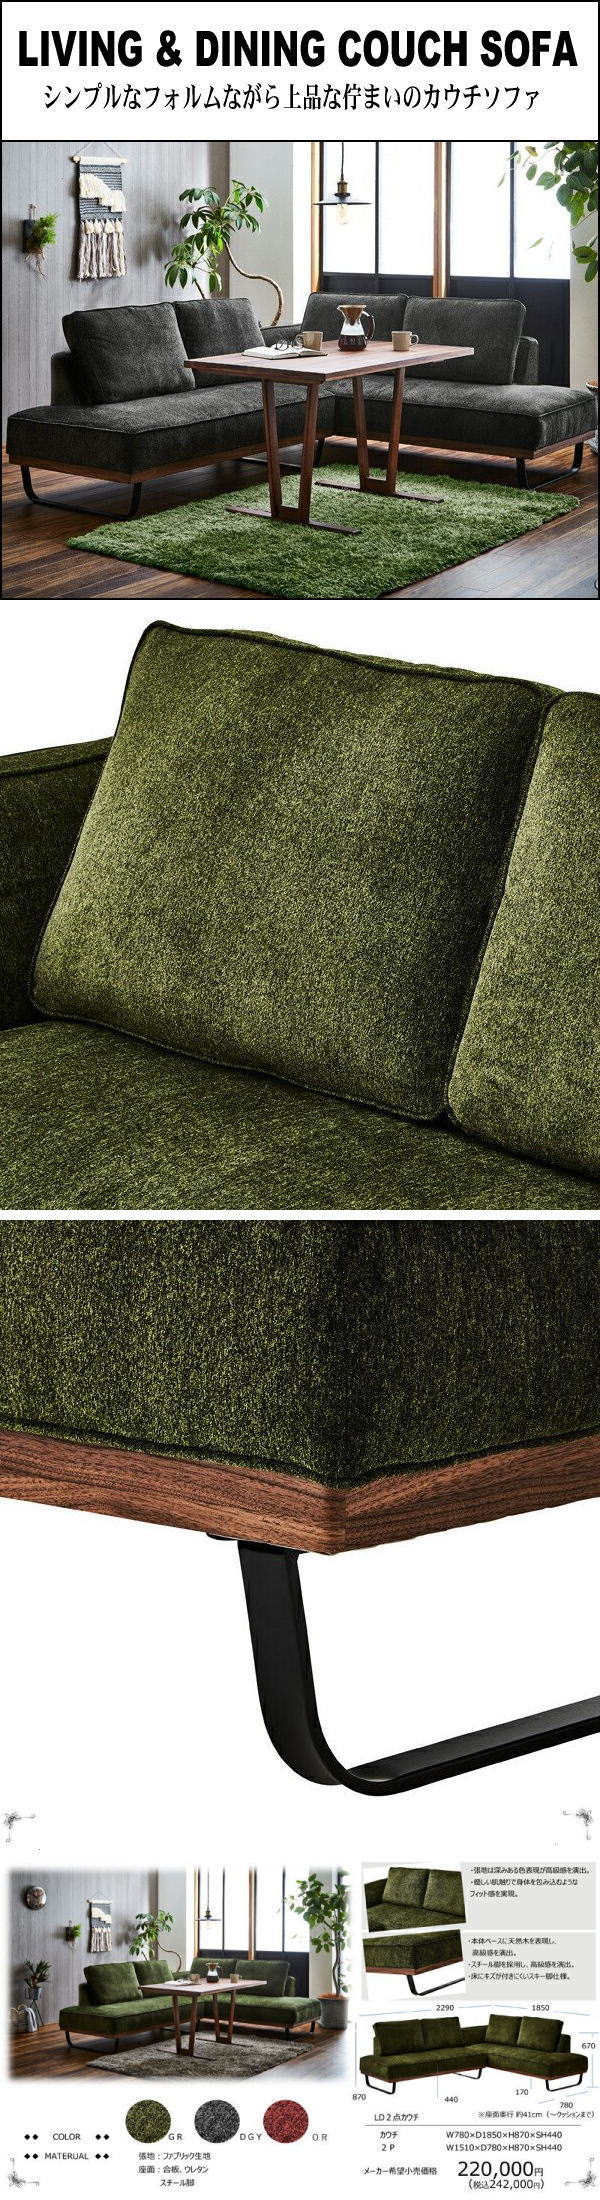 人気買蔵55GY1 北欧スタイル大型カウチソファセット■布製コーナーソファ寝椅子(検 展示品アウトレット展示処分品 布製